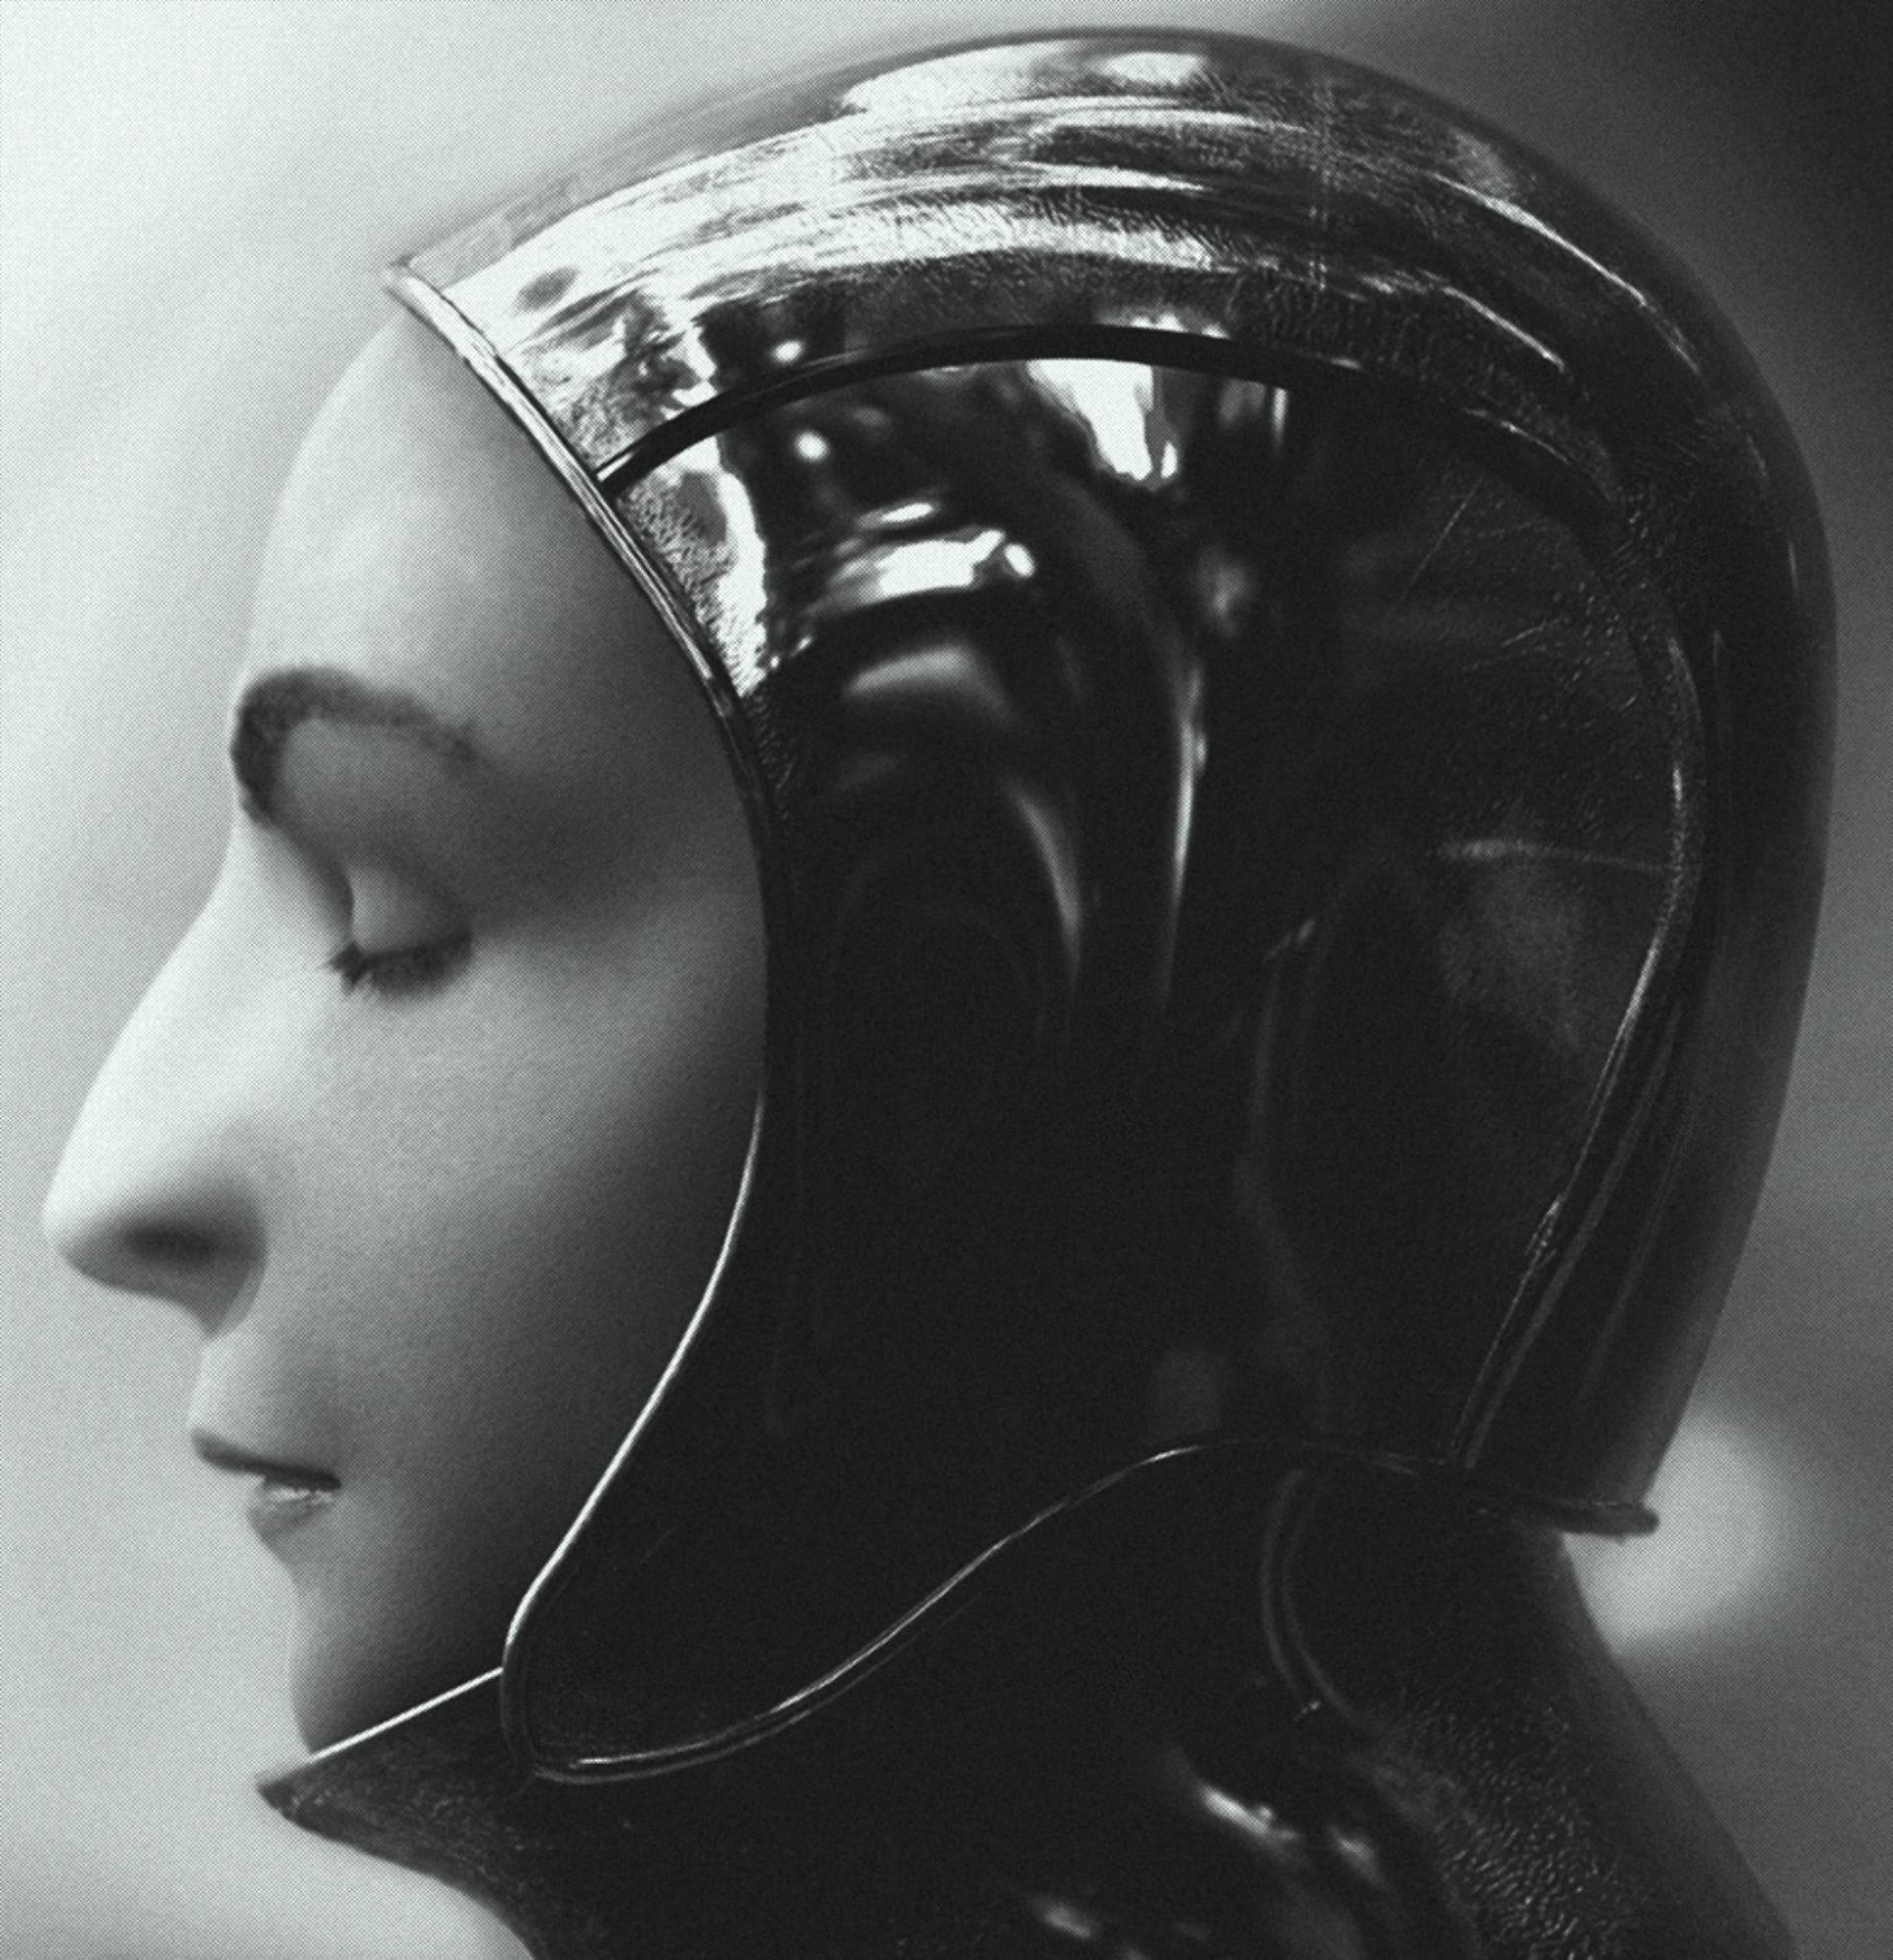 Ett svart vitt porträtt på en kvinna i profil. Kvinnan har en science fiction liknande hjälm på sig.